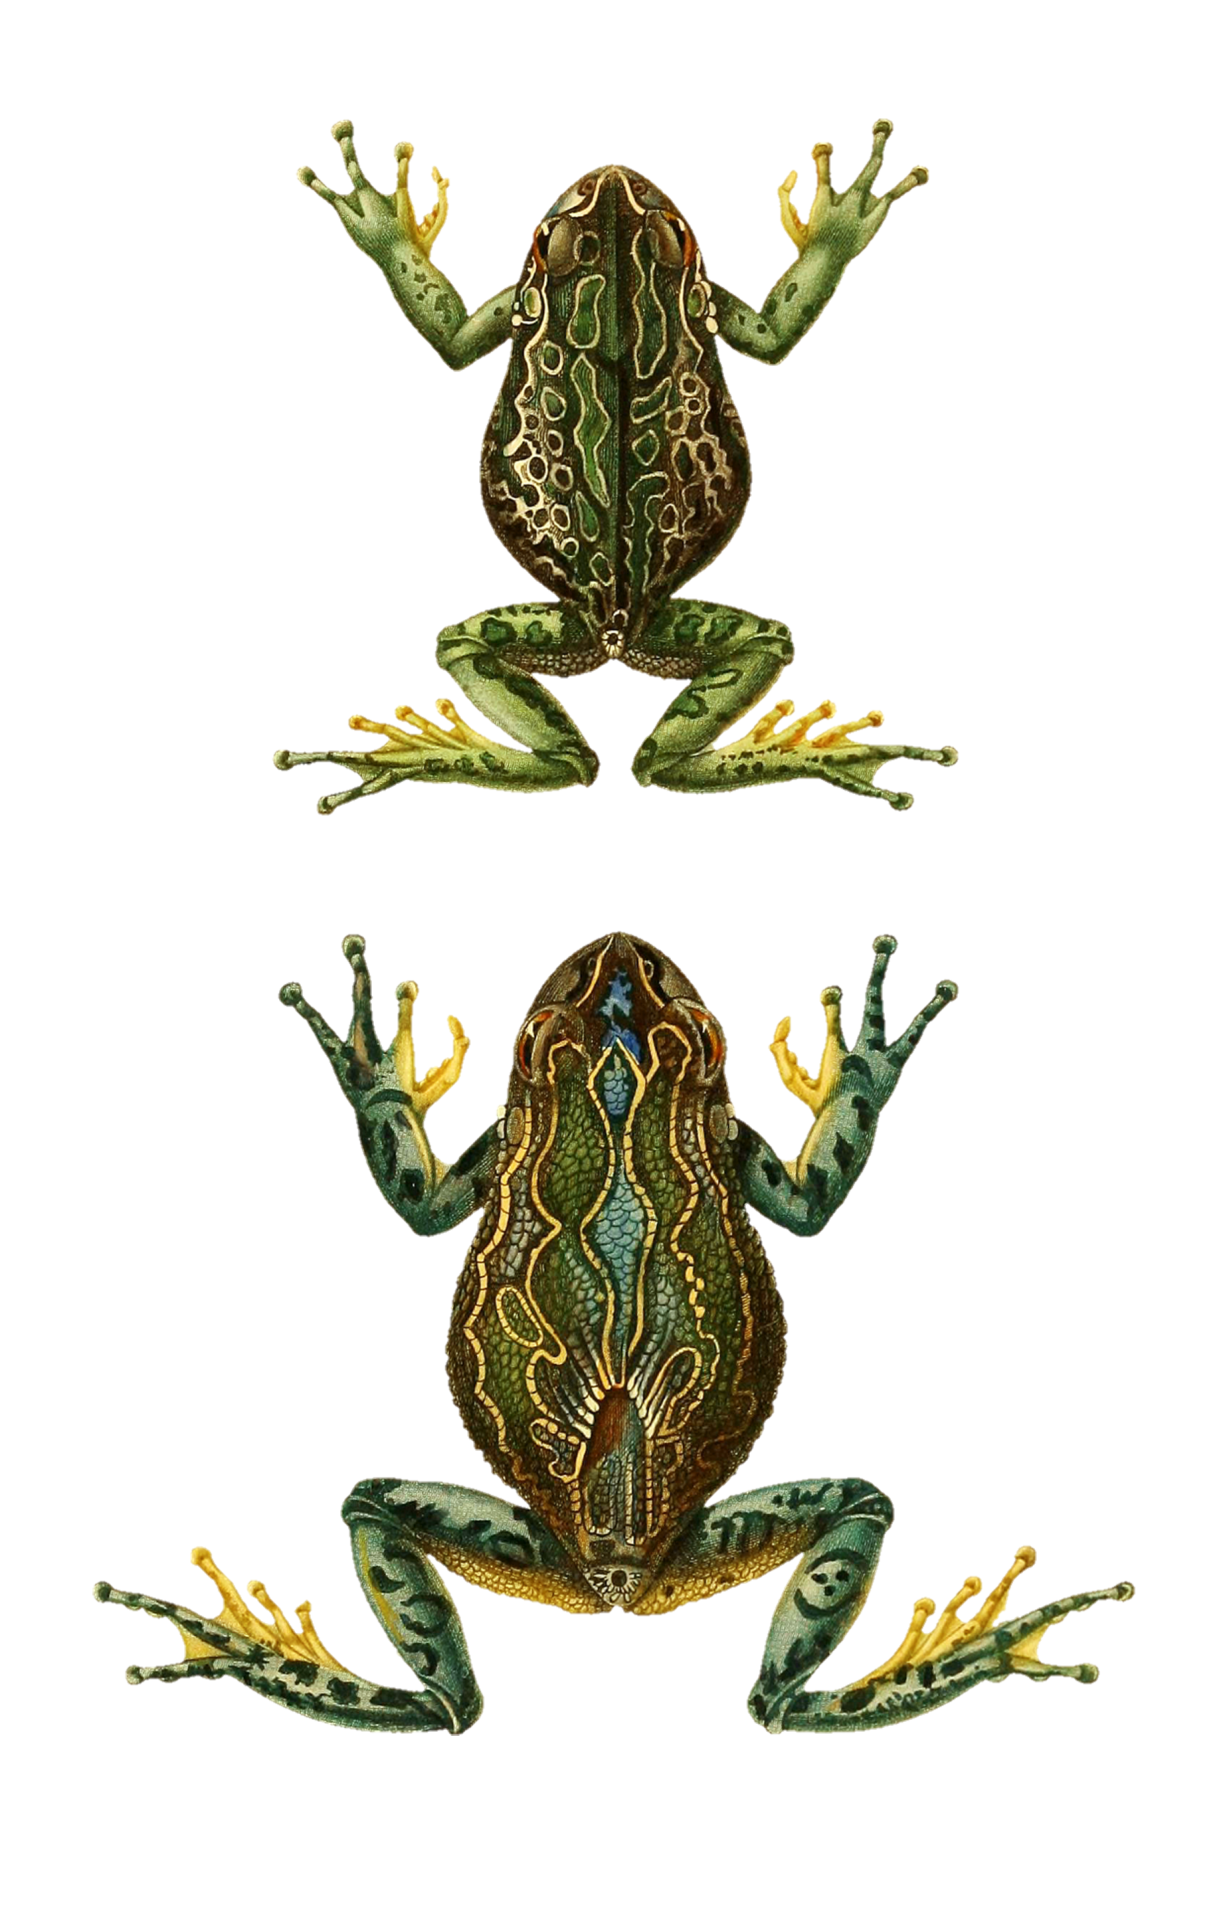 Frog Toad Amphibian Vintage